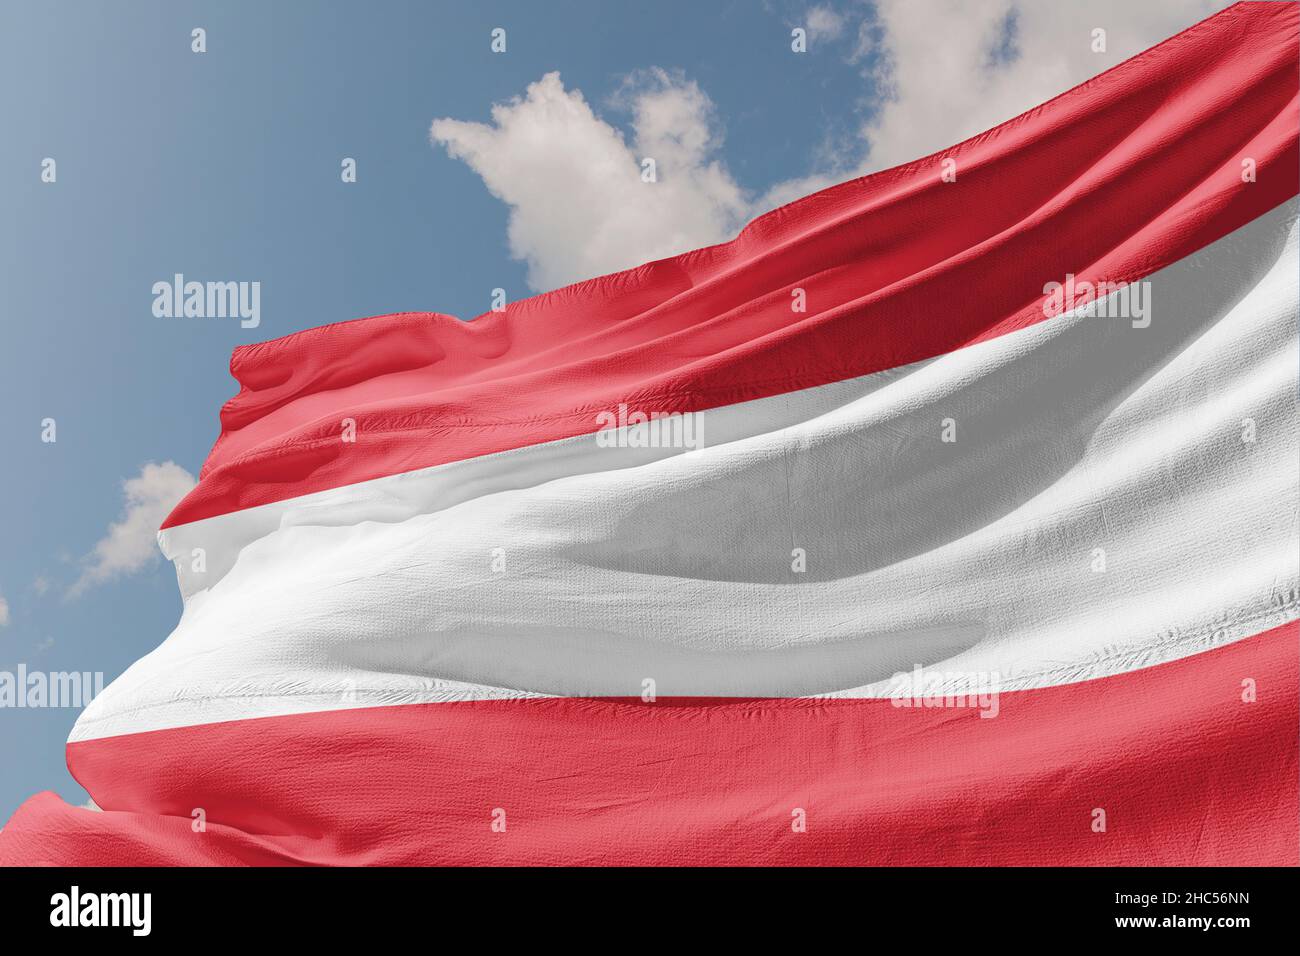 Bandiera dell'Austria, repubblica d'austria Foto Stock